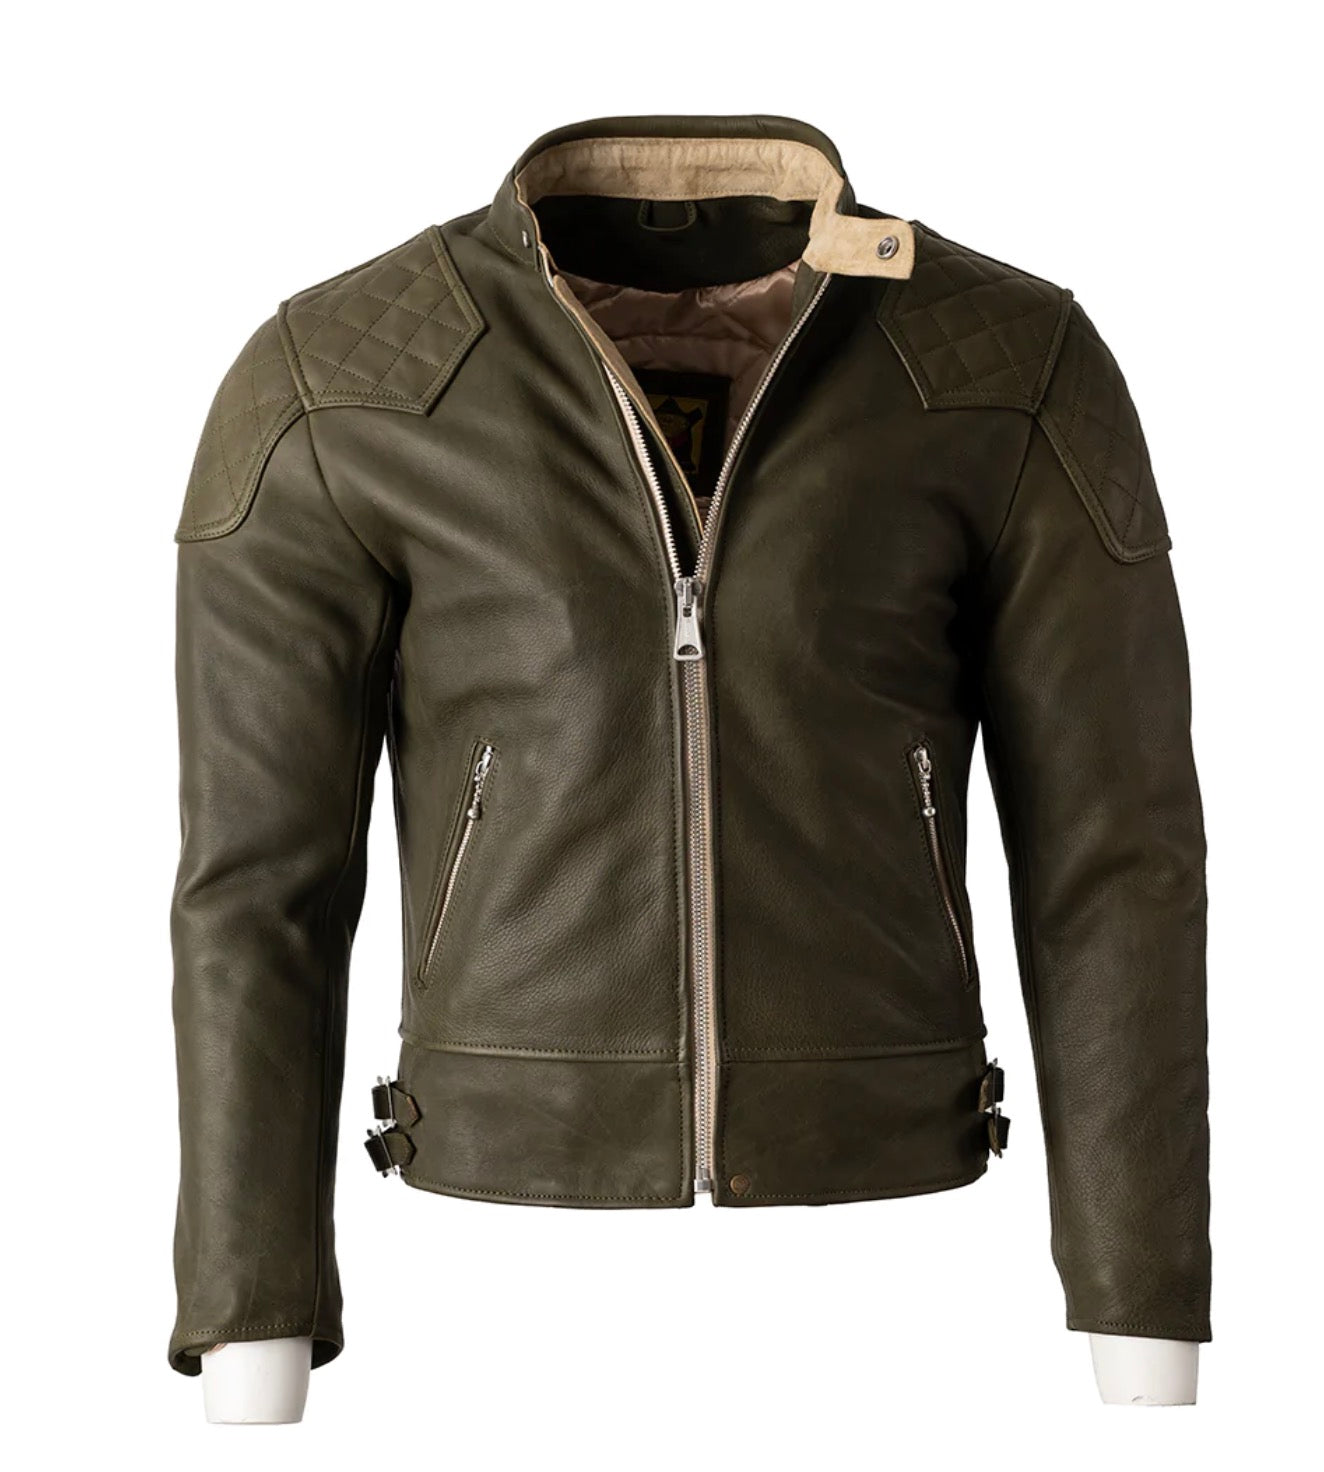 Goldtop Cafe Racer Olive Green Leather jacket Quality